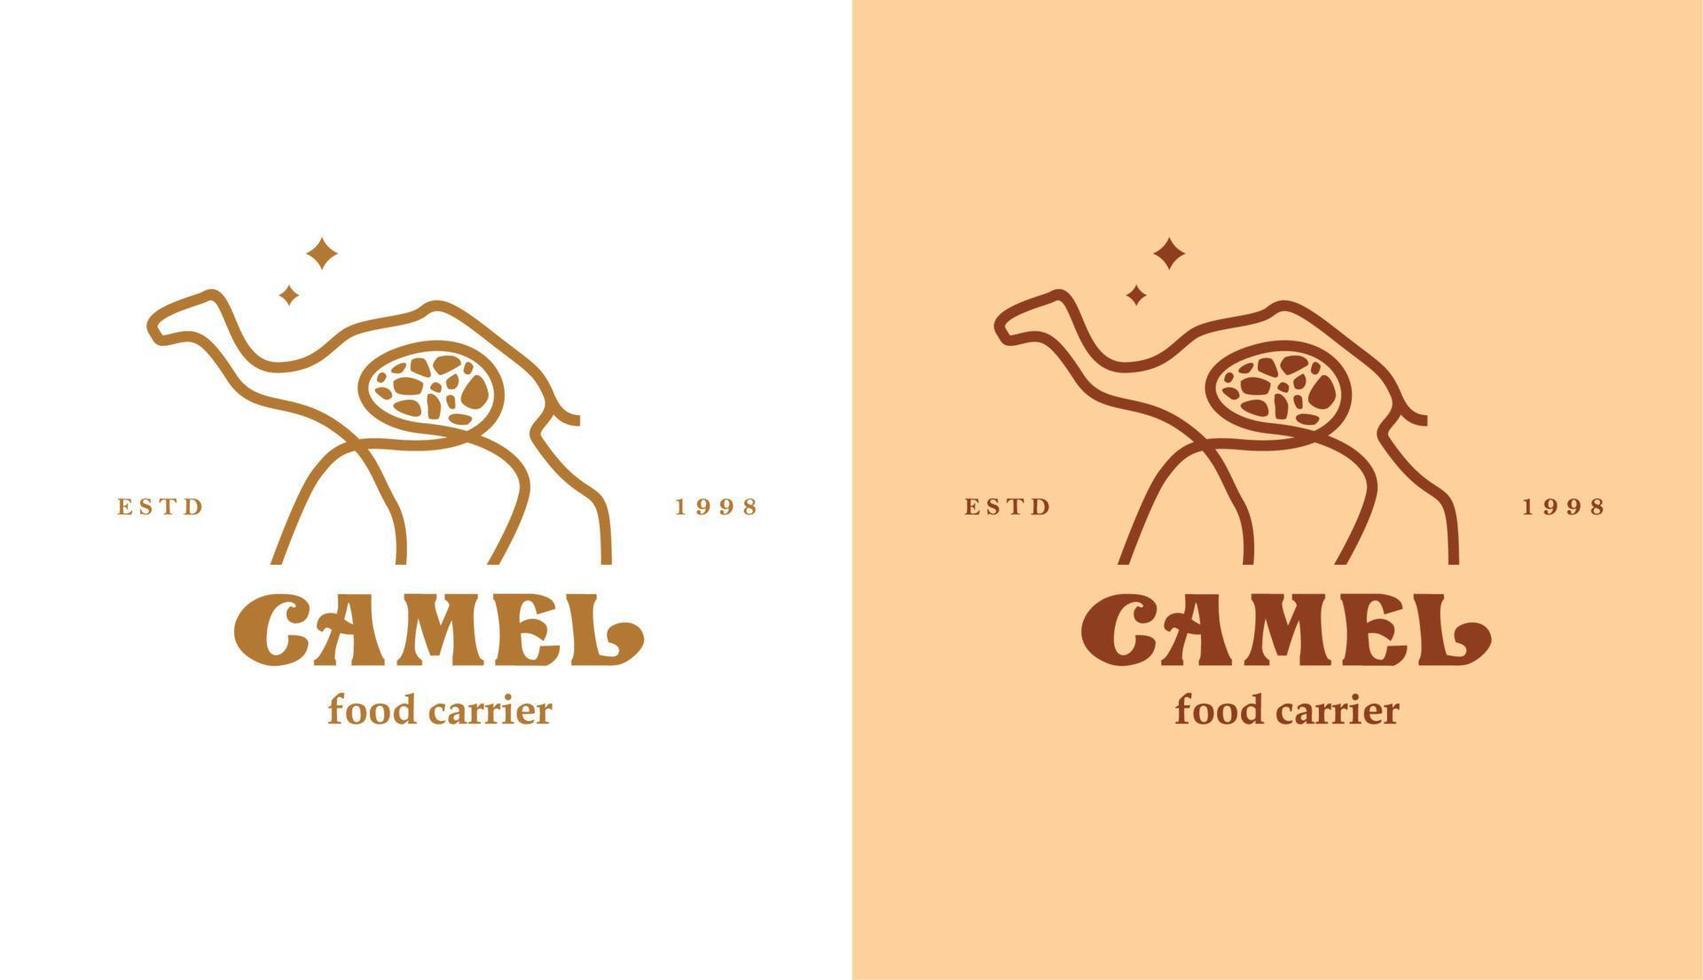 camelo monoline com comida no estômago, design de logotipo de animal do deserto com estrelas e linhas vetoriais adequadas para logotipos de viagens e comida vetor